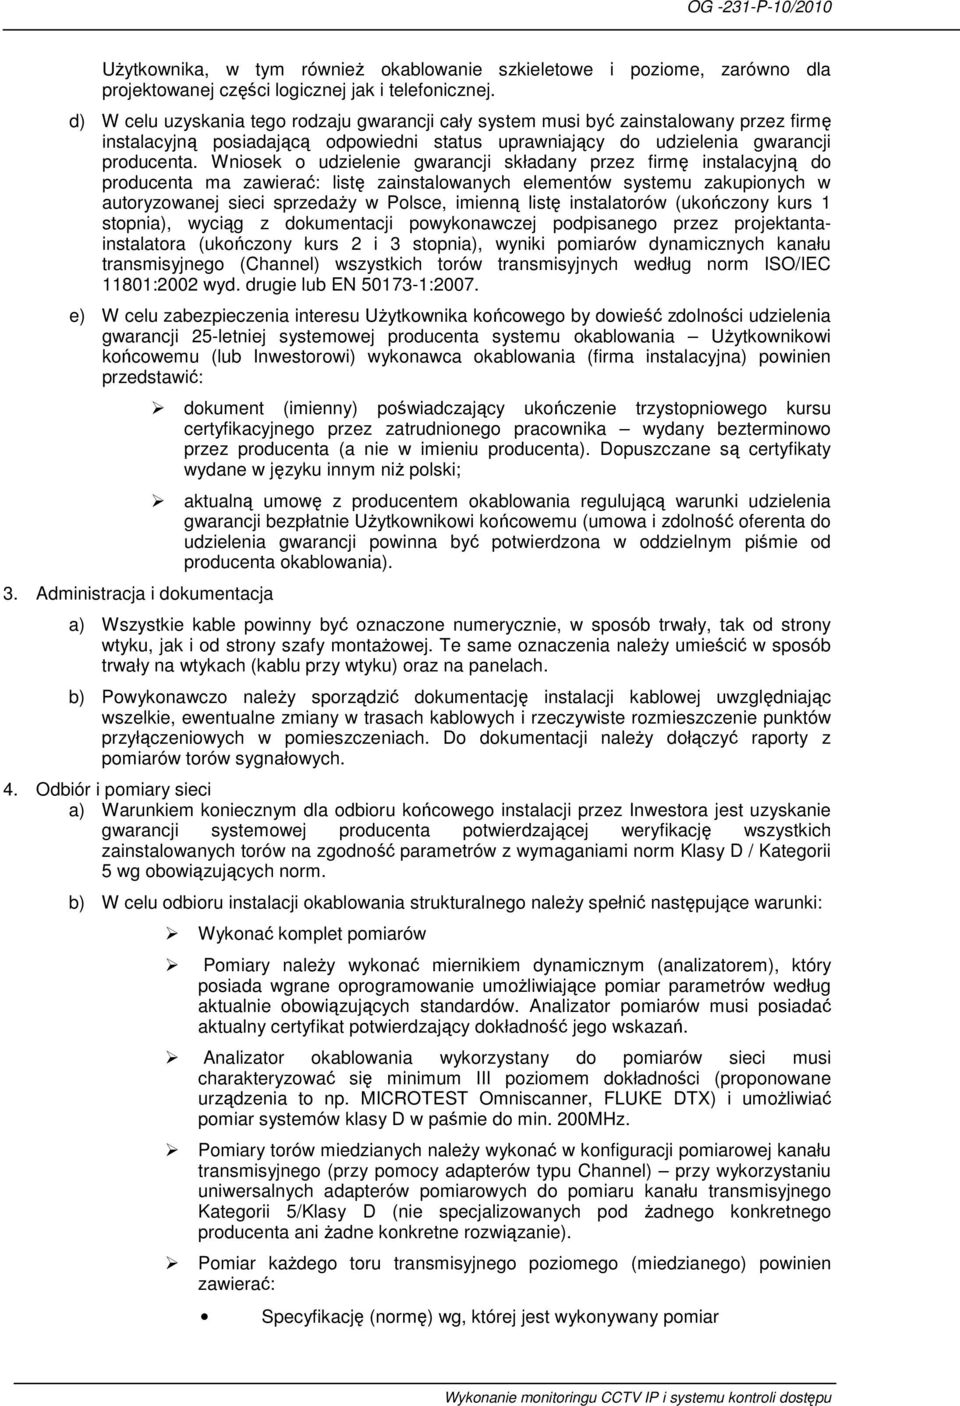 Wniosek o udzielenie gwarancji składany przez firmę instalacyjną do producenta ma zawierać: listę zainstalowanych elementów systemu zakupionych w autoryzowanej sieci sprzedaŝy w Polsce, imienną listę